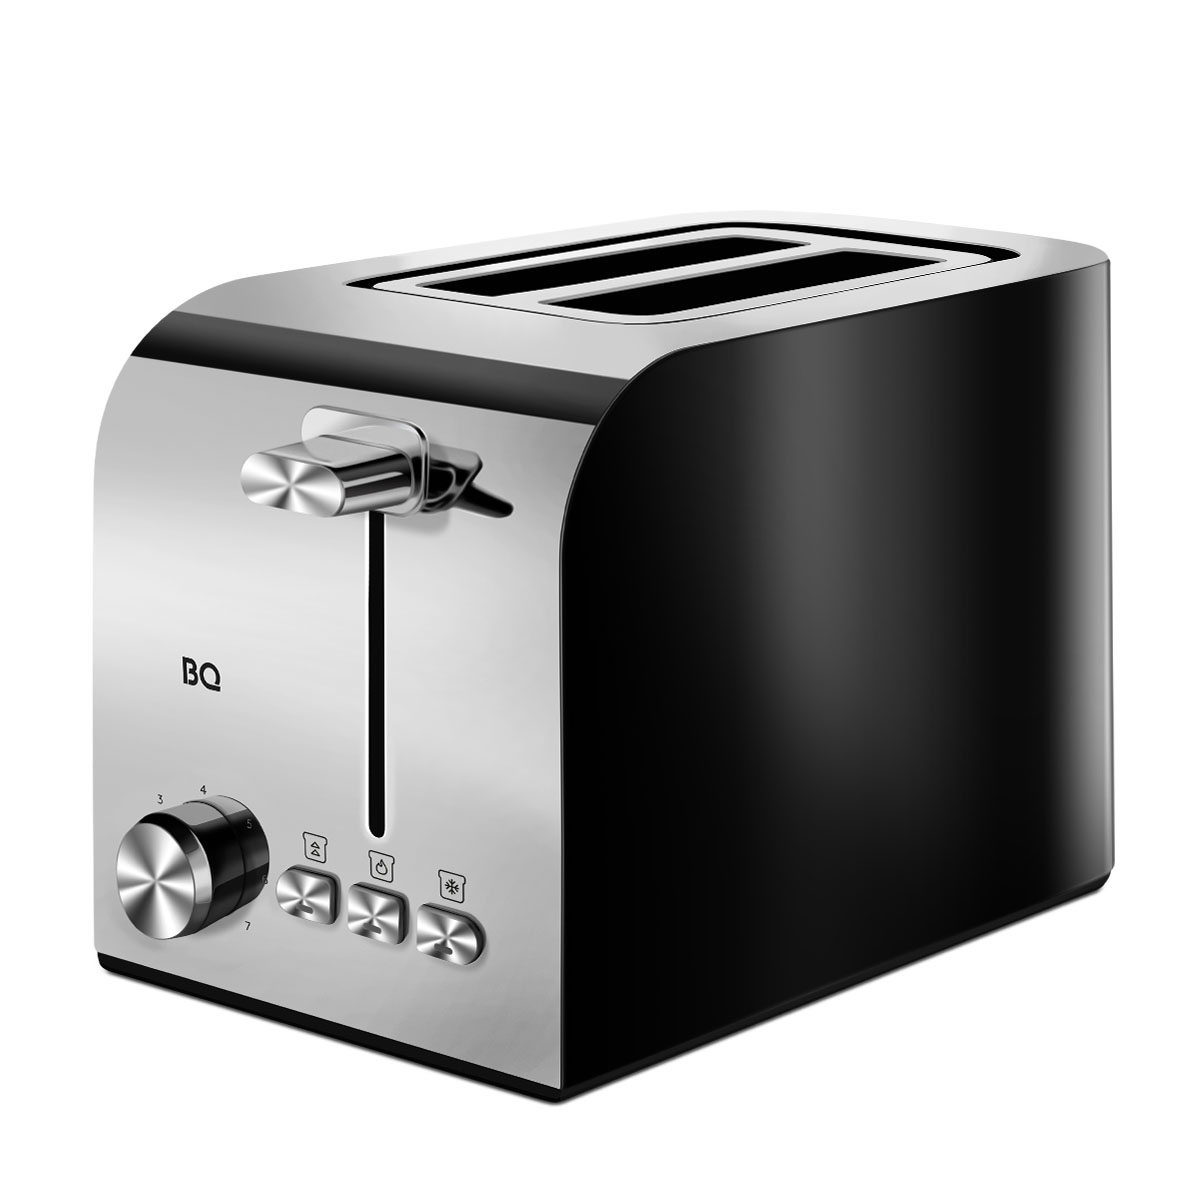 Тостер BQ T2000 серебристый, черный тостер vlk palermo 102 800 вт 7 режимов прожарки 2 тоста зелёный